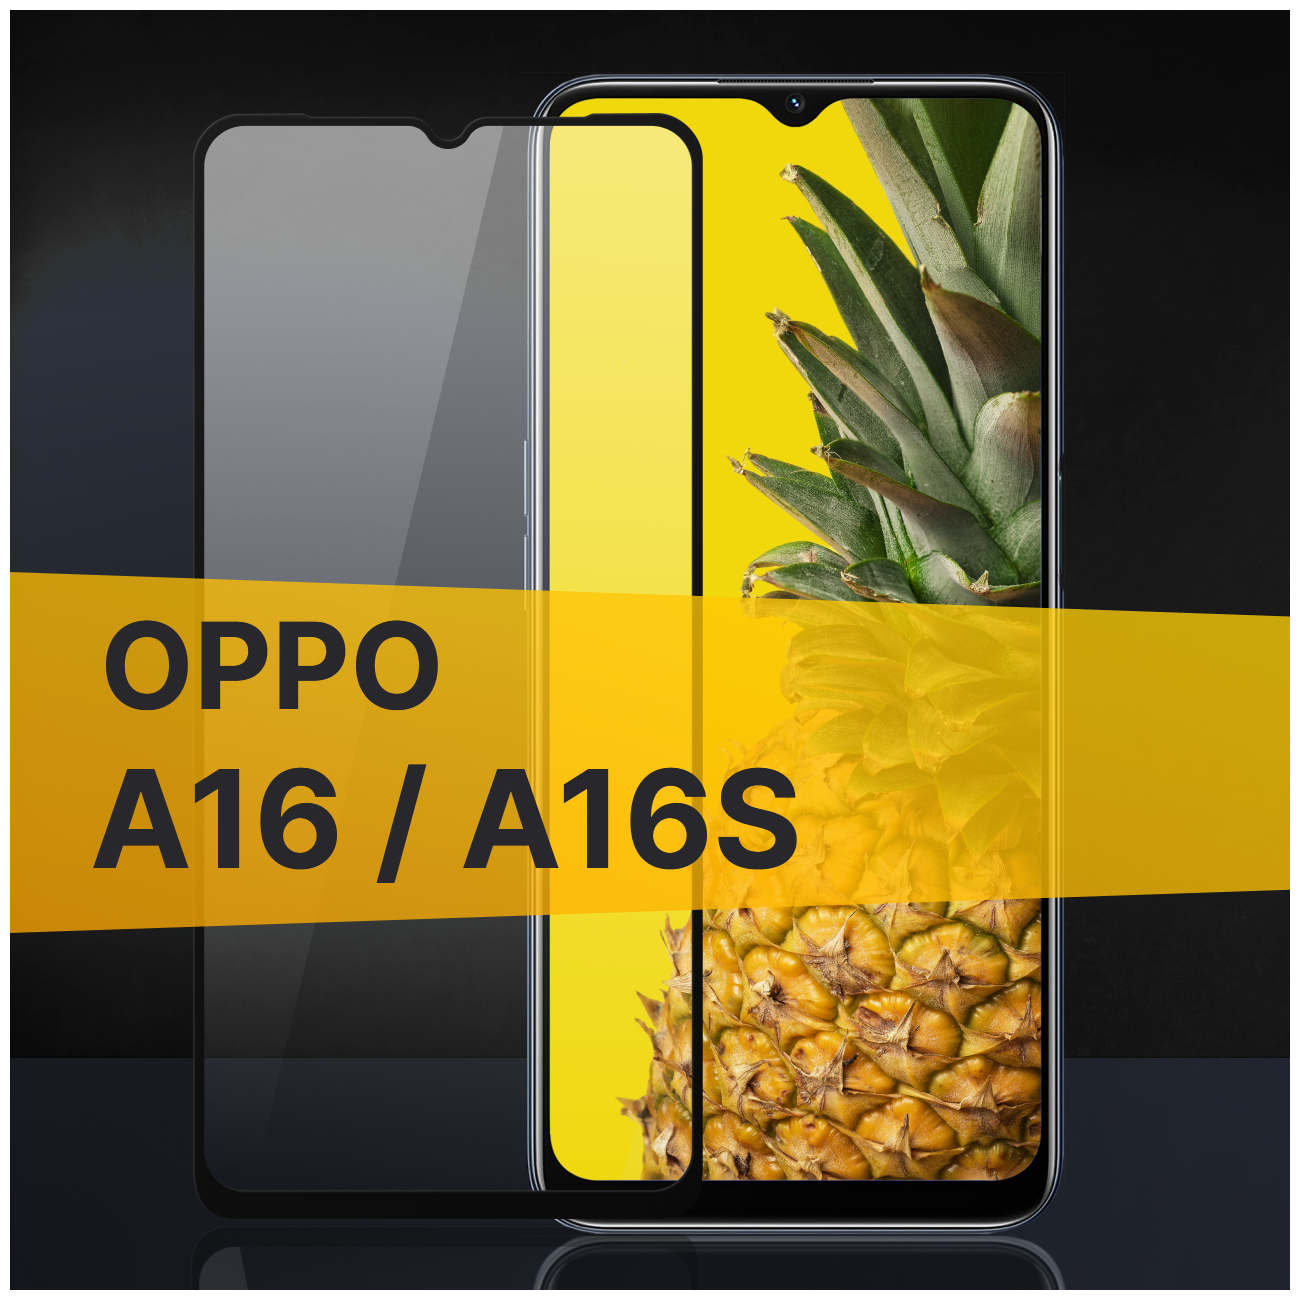 Противоударное защитное стекло для телефона Oppo A16 и A16s / Полноклеевое 3D стекло с олеофобным покрытием на смартфон Оппо А16 и А16с / С черной рамкой